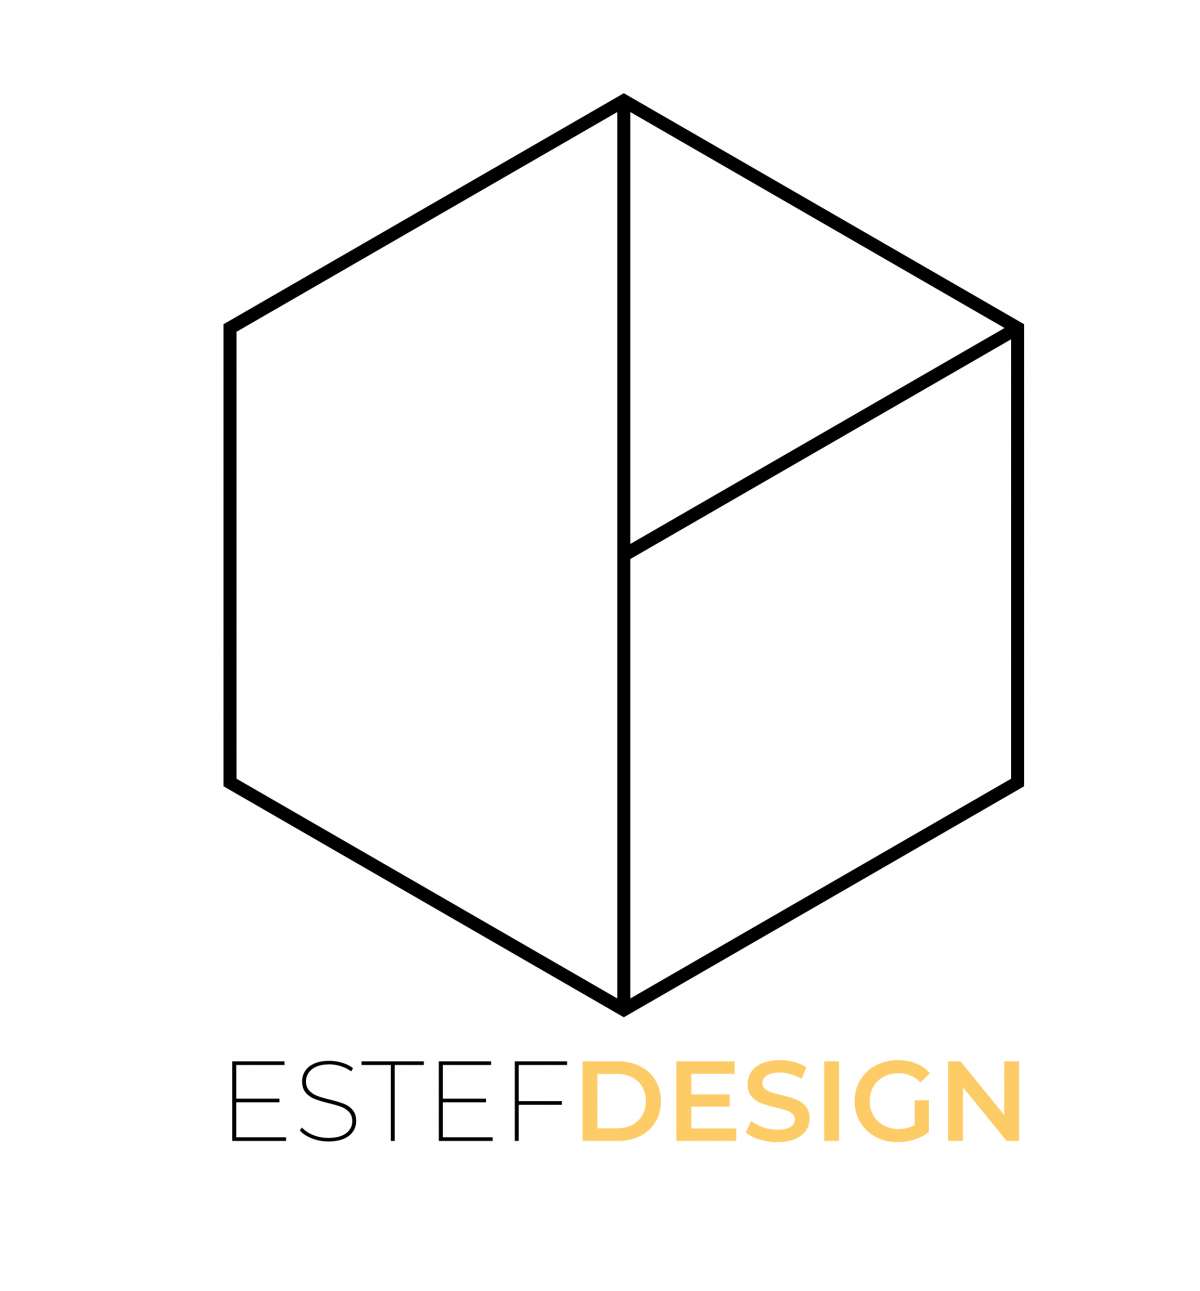 Diseñador gráfico - Estefanía González - Madrid - Diseño de logos